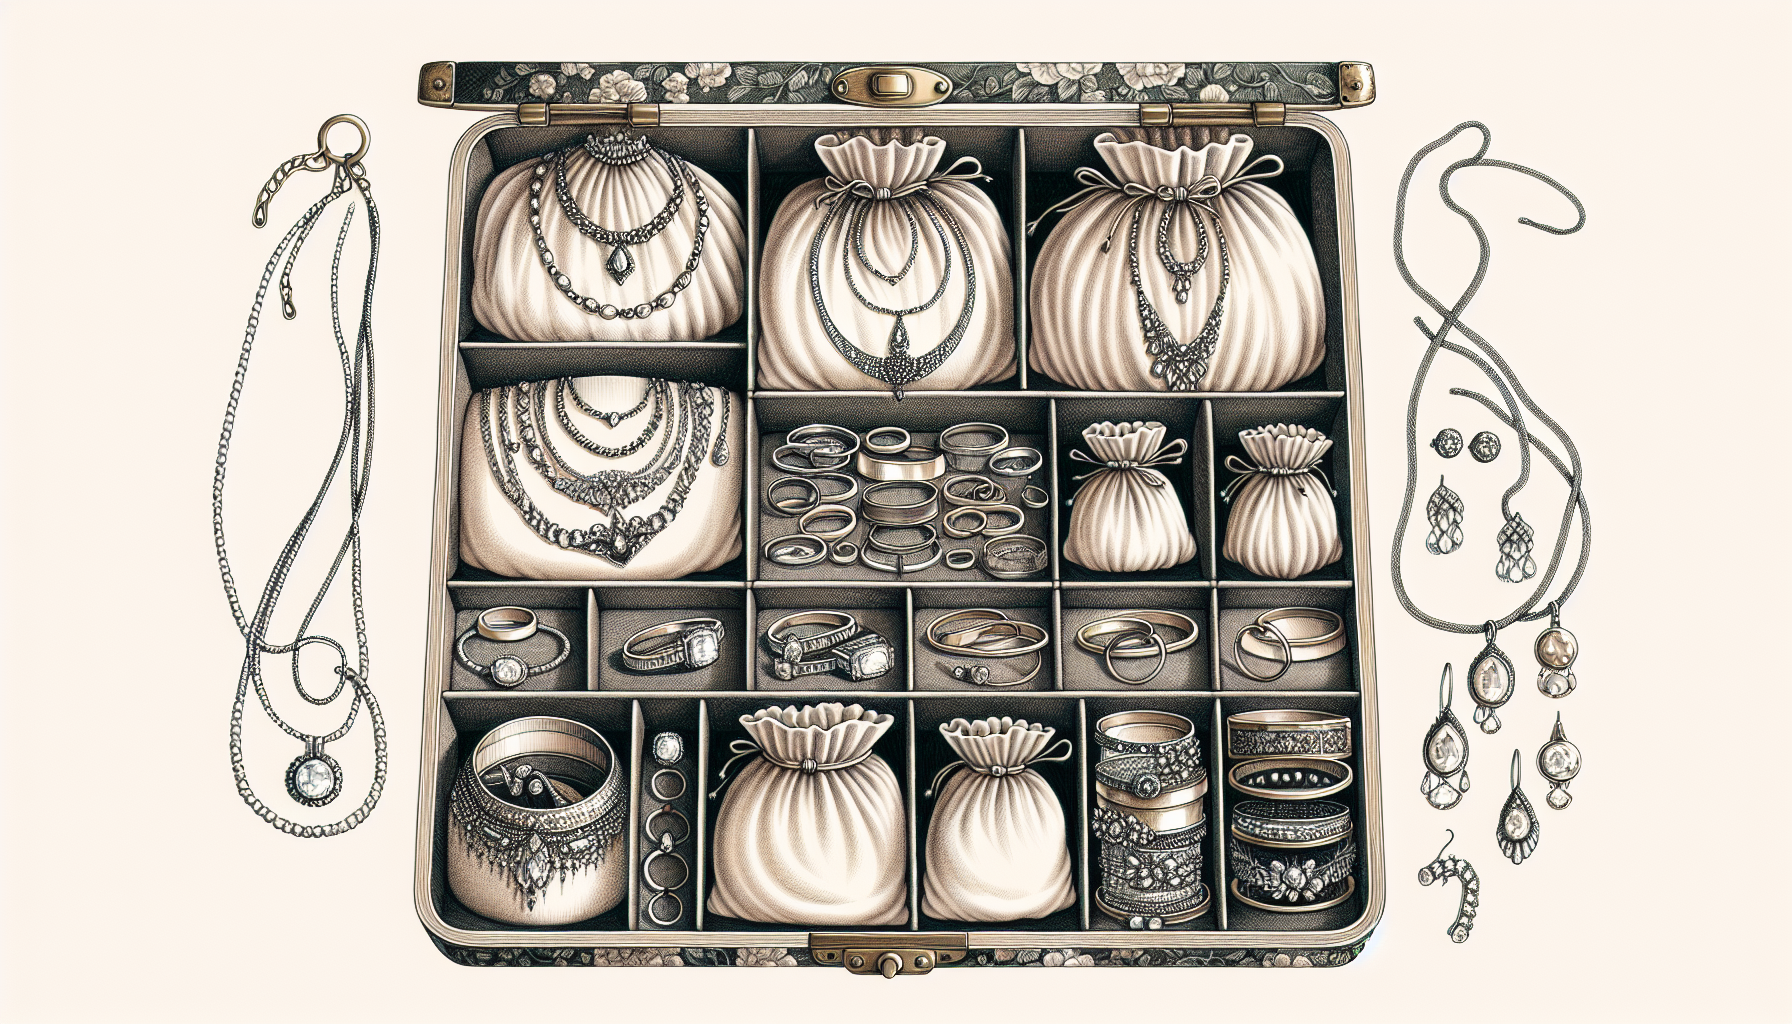 Proper storage of jewellery